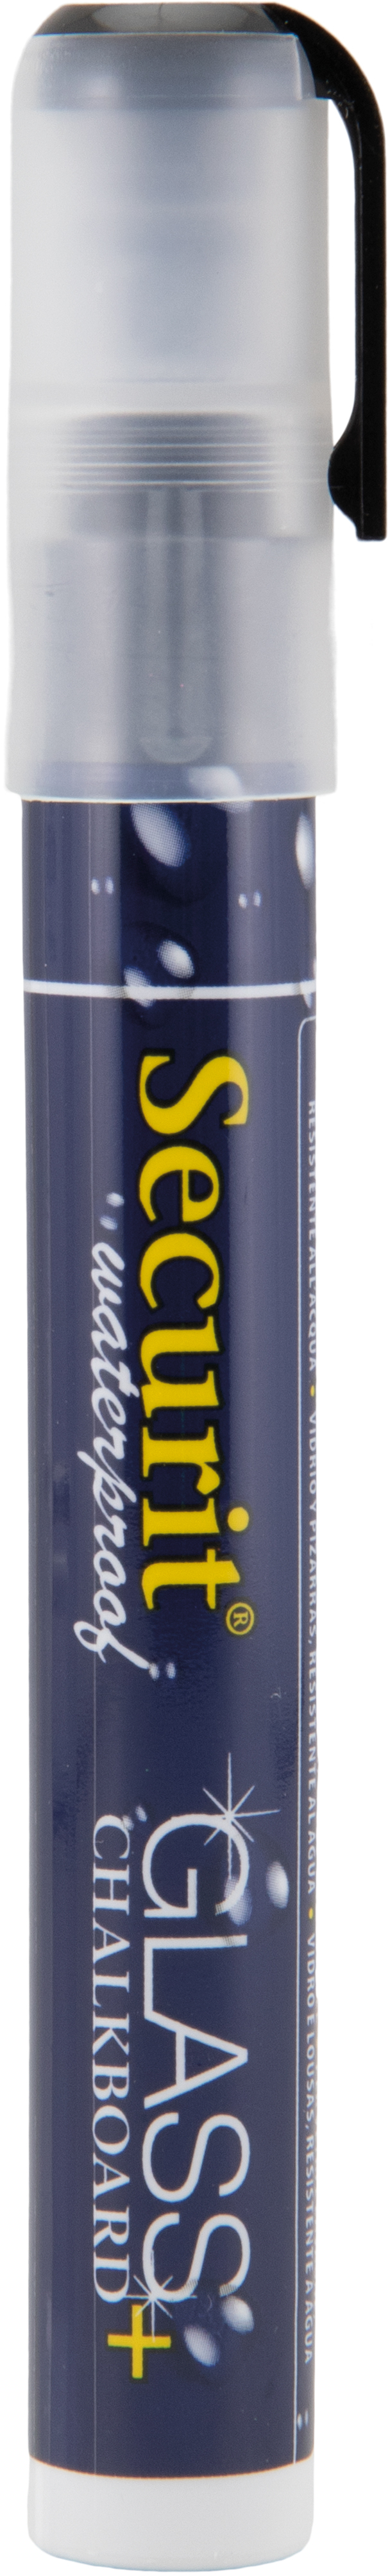 SECURIT Marker Craie 2-6mm SMA610-BL noir, imperméable noir, imperméable